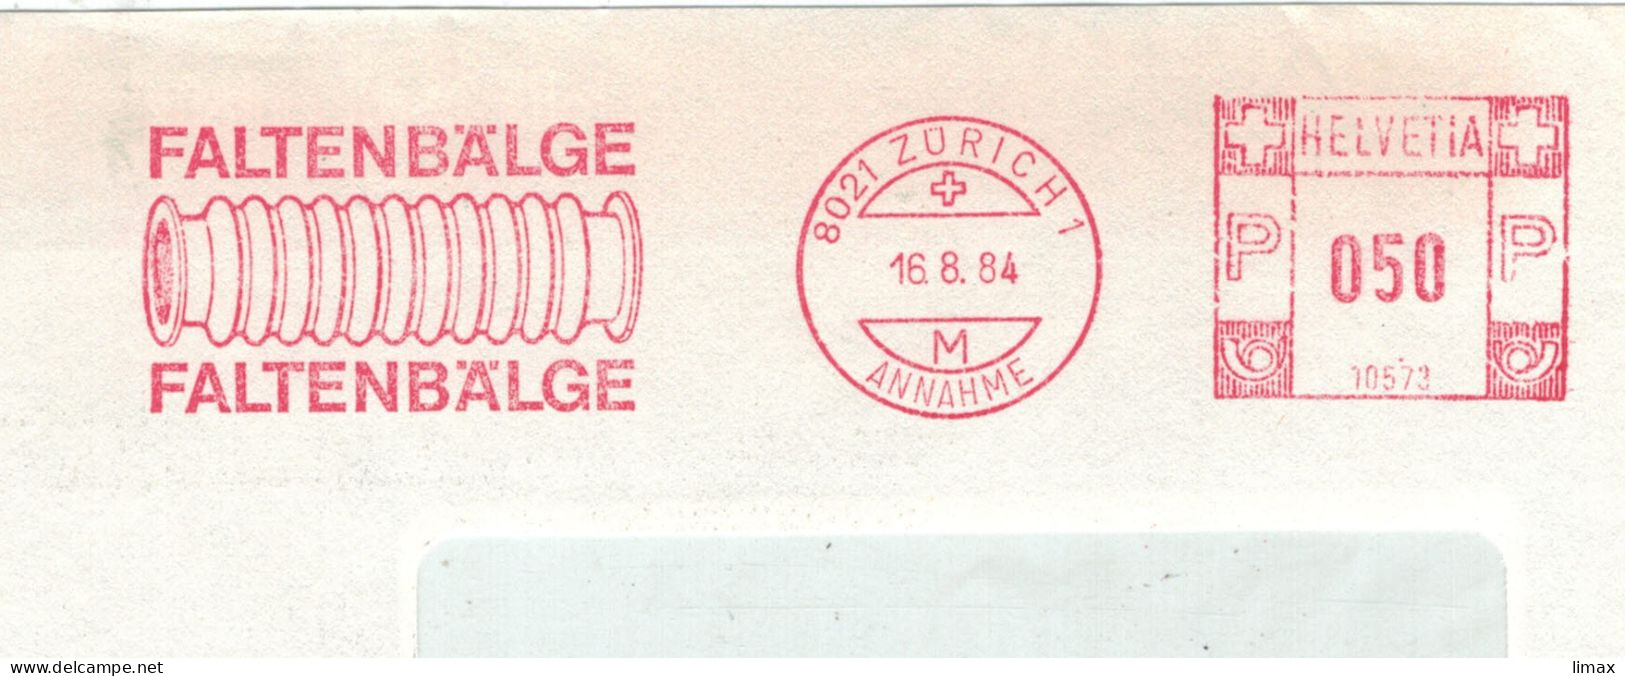 8021 Zürich 1984 Annahme Faltenbälge No. 10573 - Aufsatz Für Fotoapparate Nahaufnahmen - Postage Meters